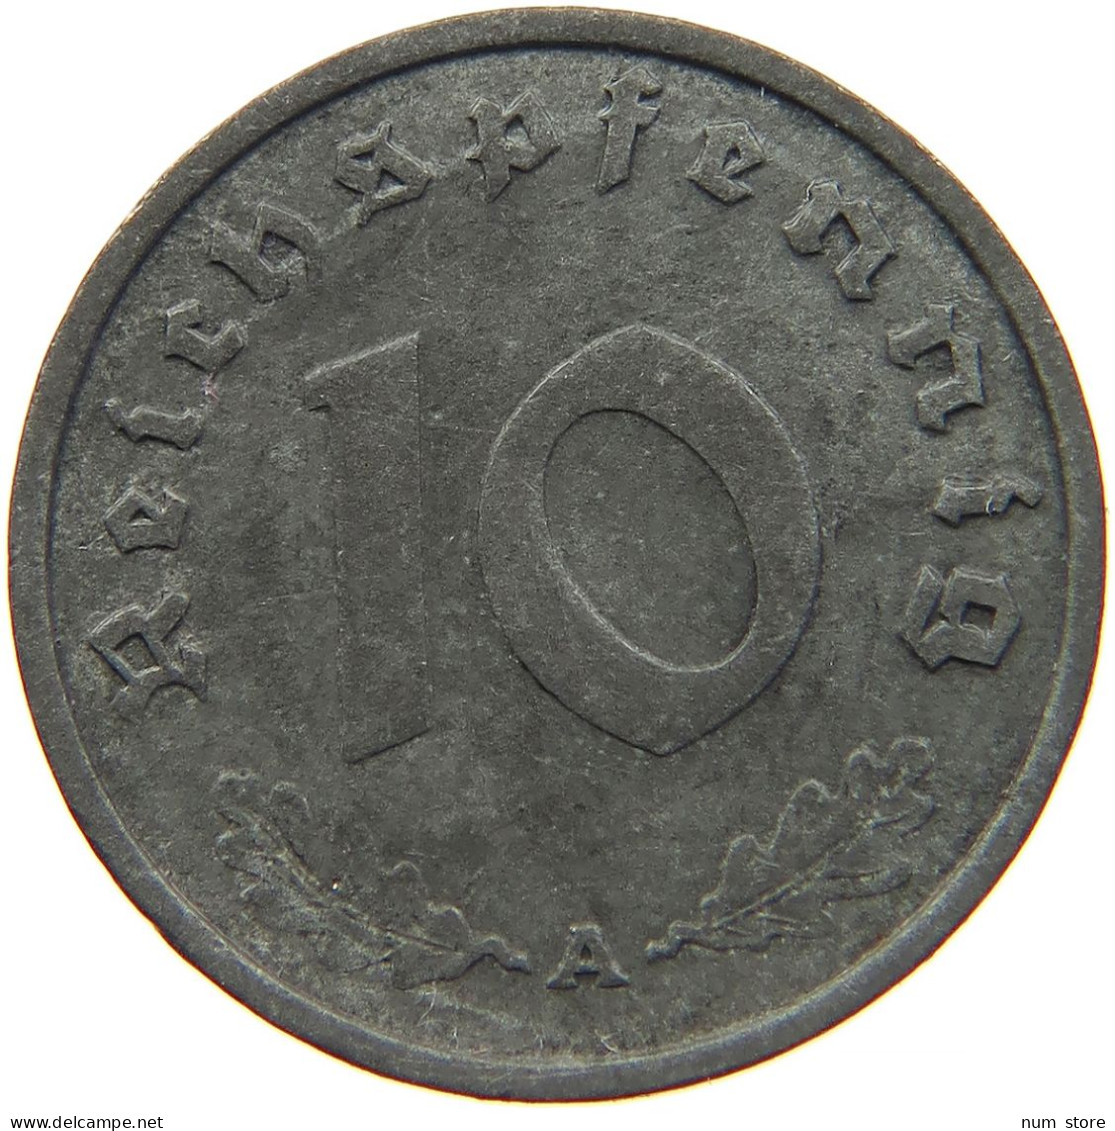 GERMANY 10 REICHSPFENNIG 1940 A #s095 0013 - 10 Reichspfennig